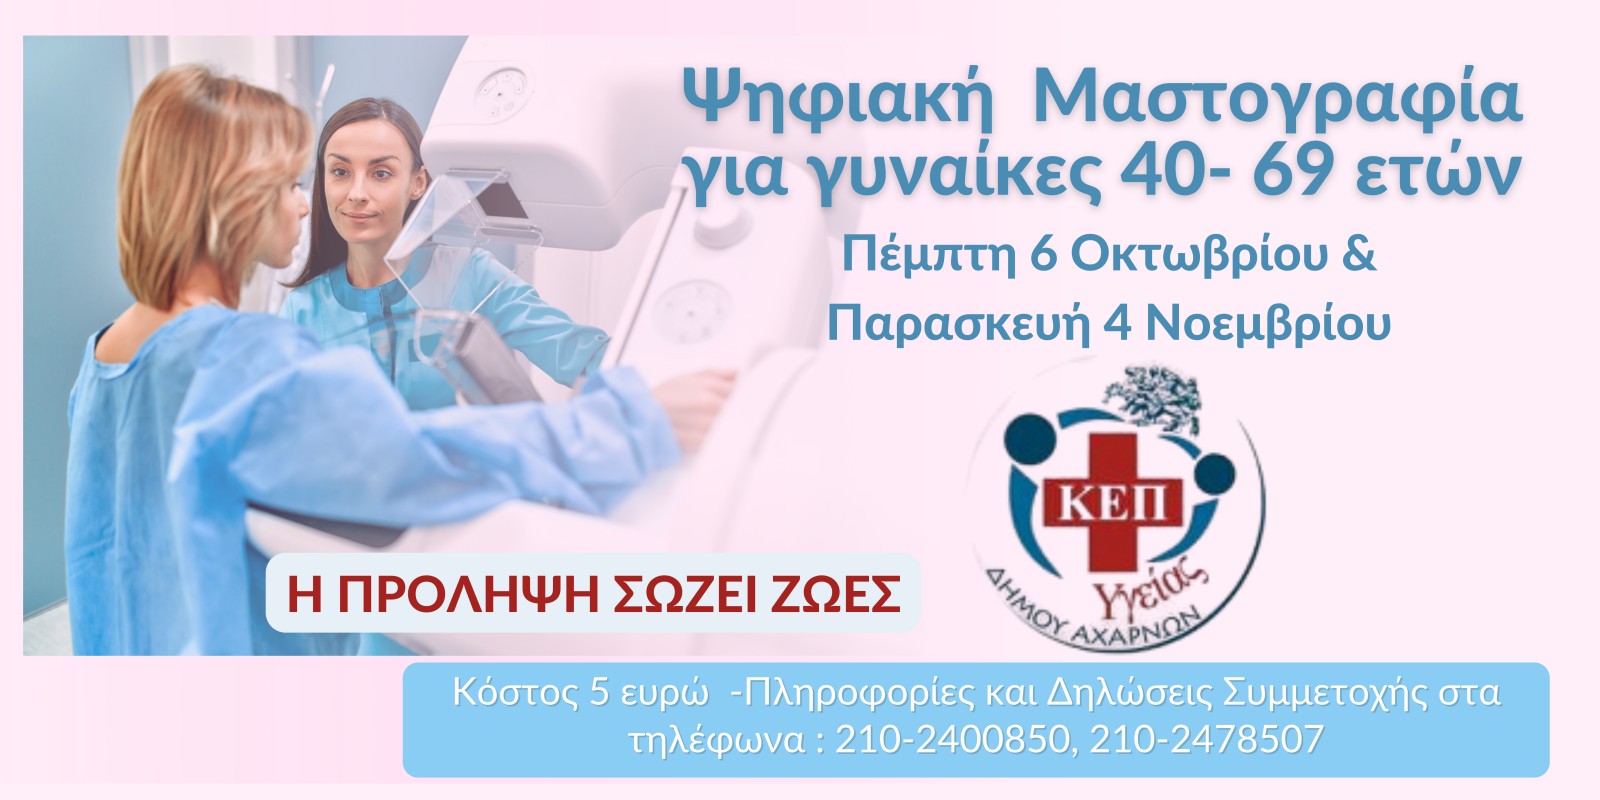 Ψηφιακή Μαστογραφία για γυναίκες 40-69 Ετών